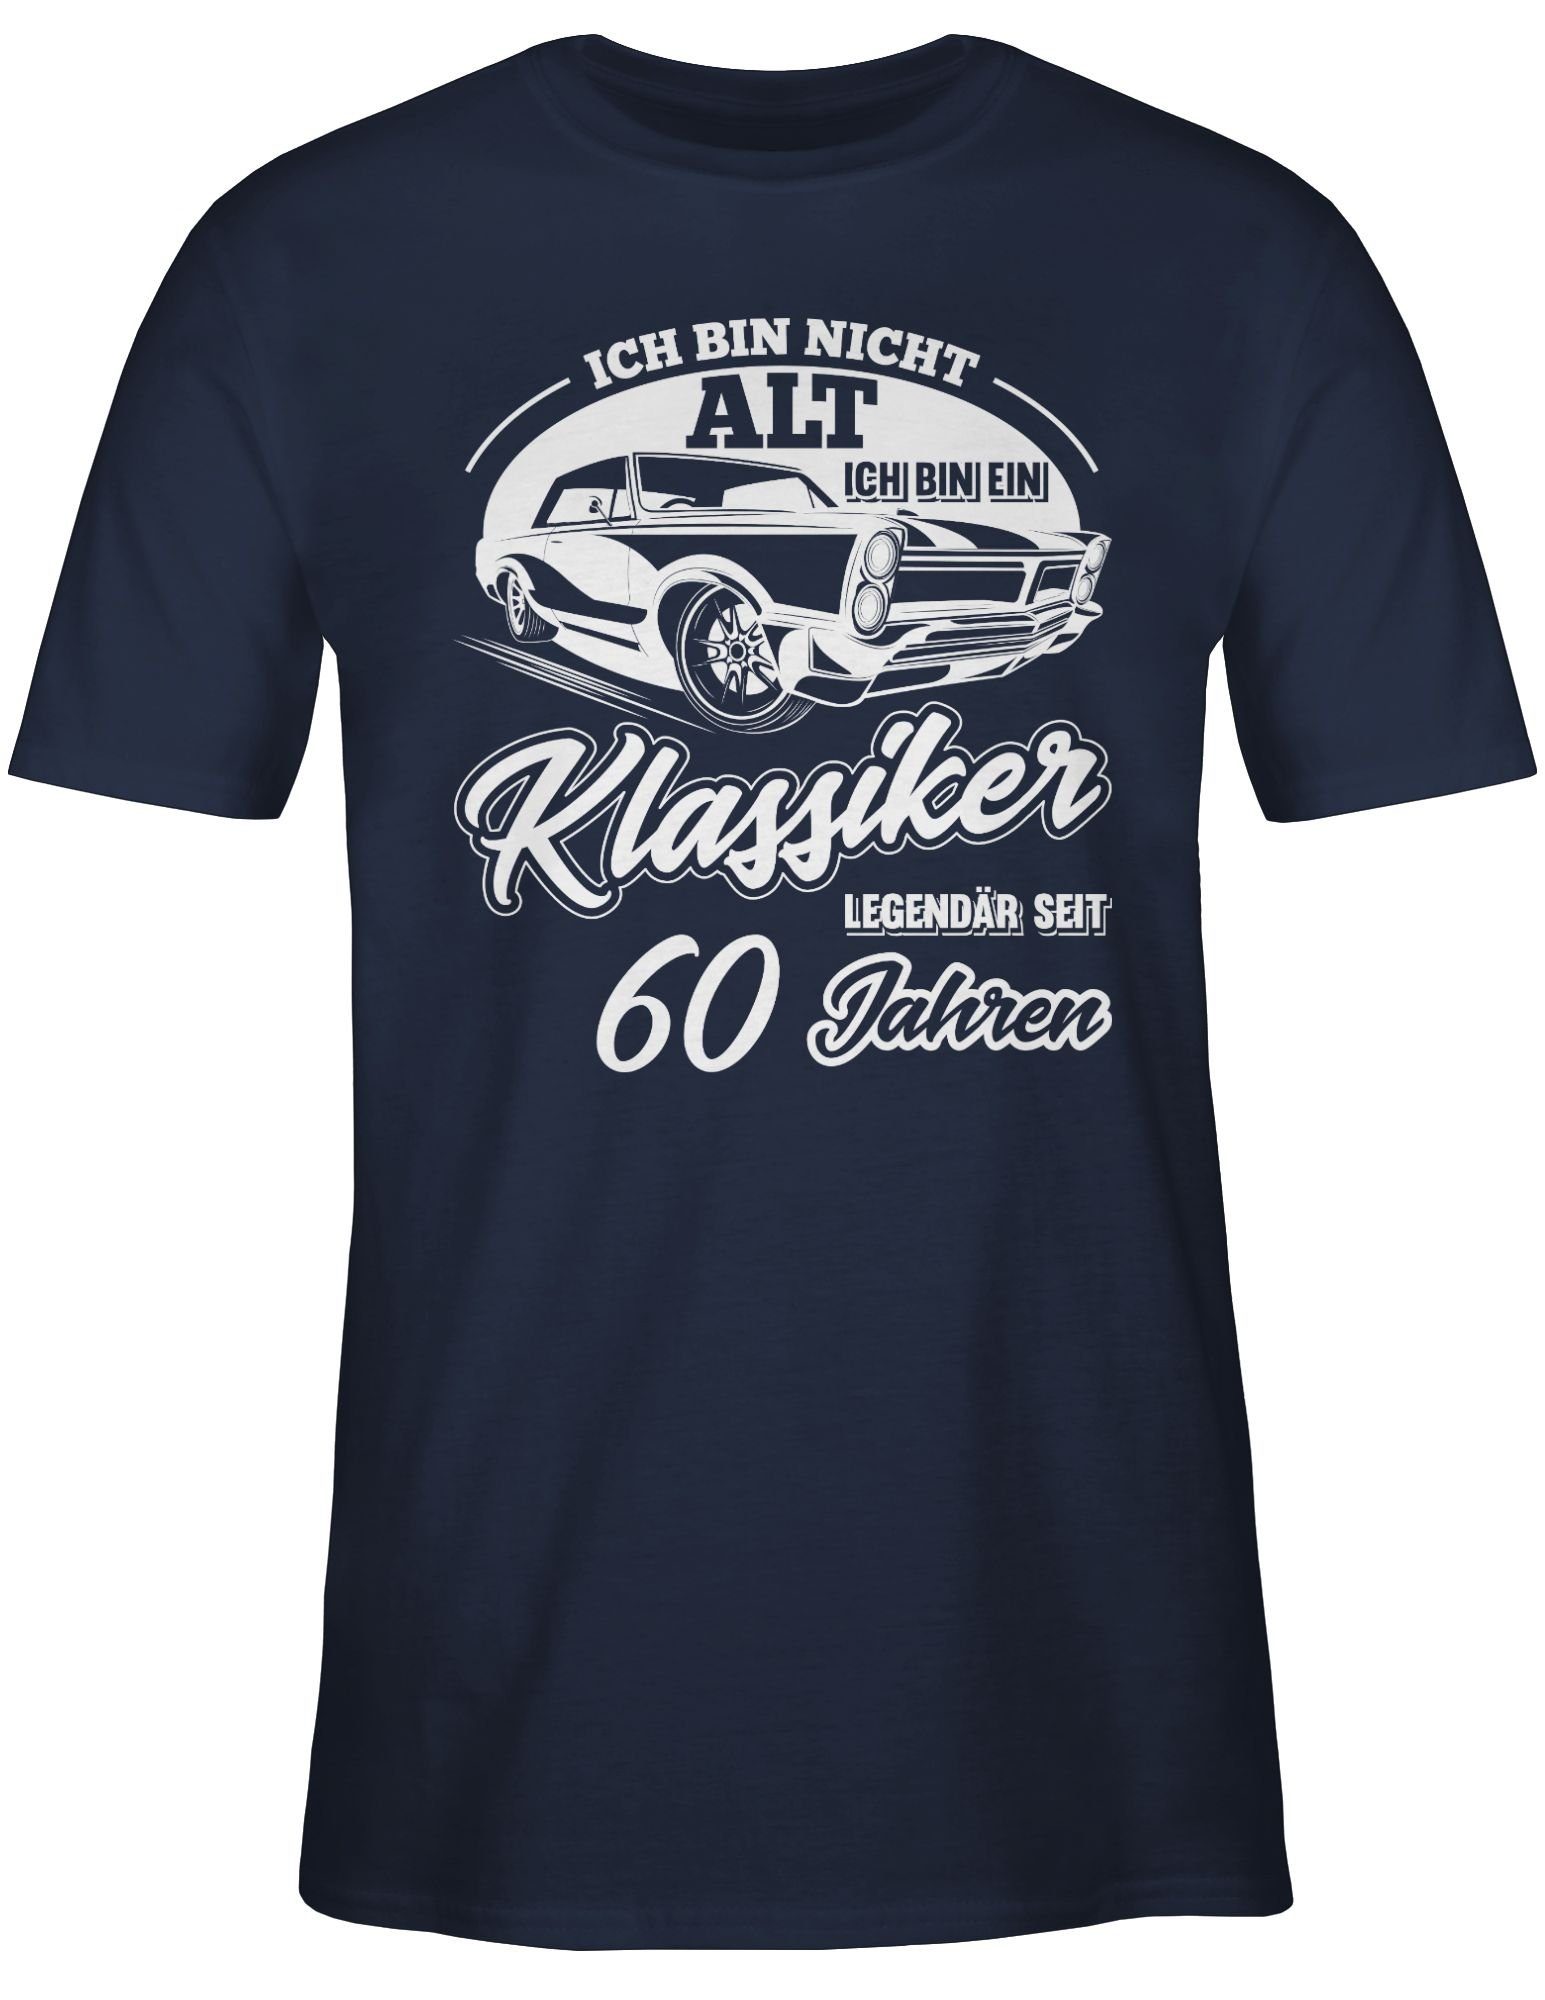 bin bin 1 Sechzig Ich Geburtstag ich Klassiker alt nicht Shirtracer T-Shirt Navy Blau 60. ein